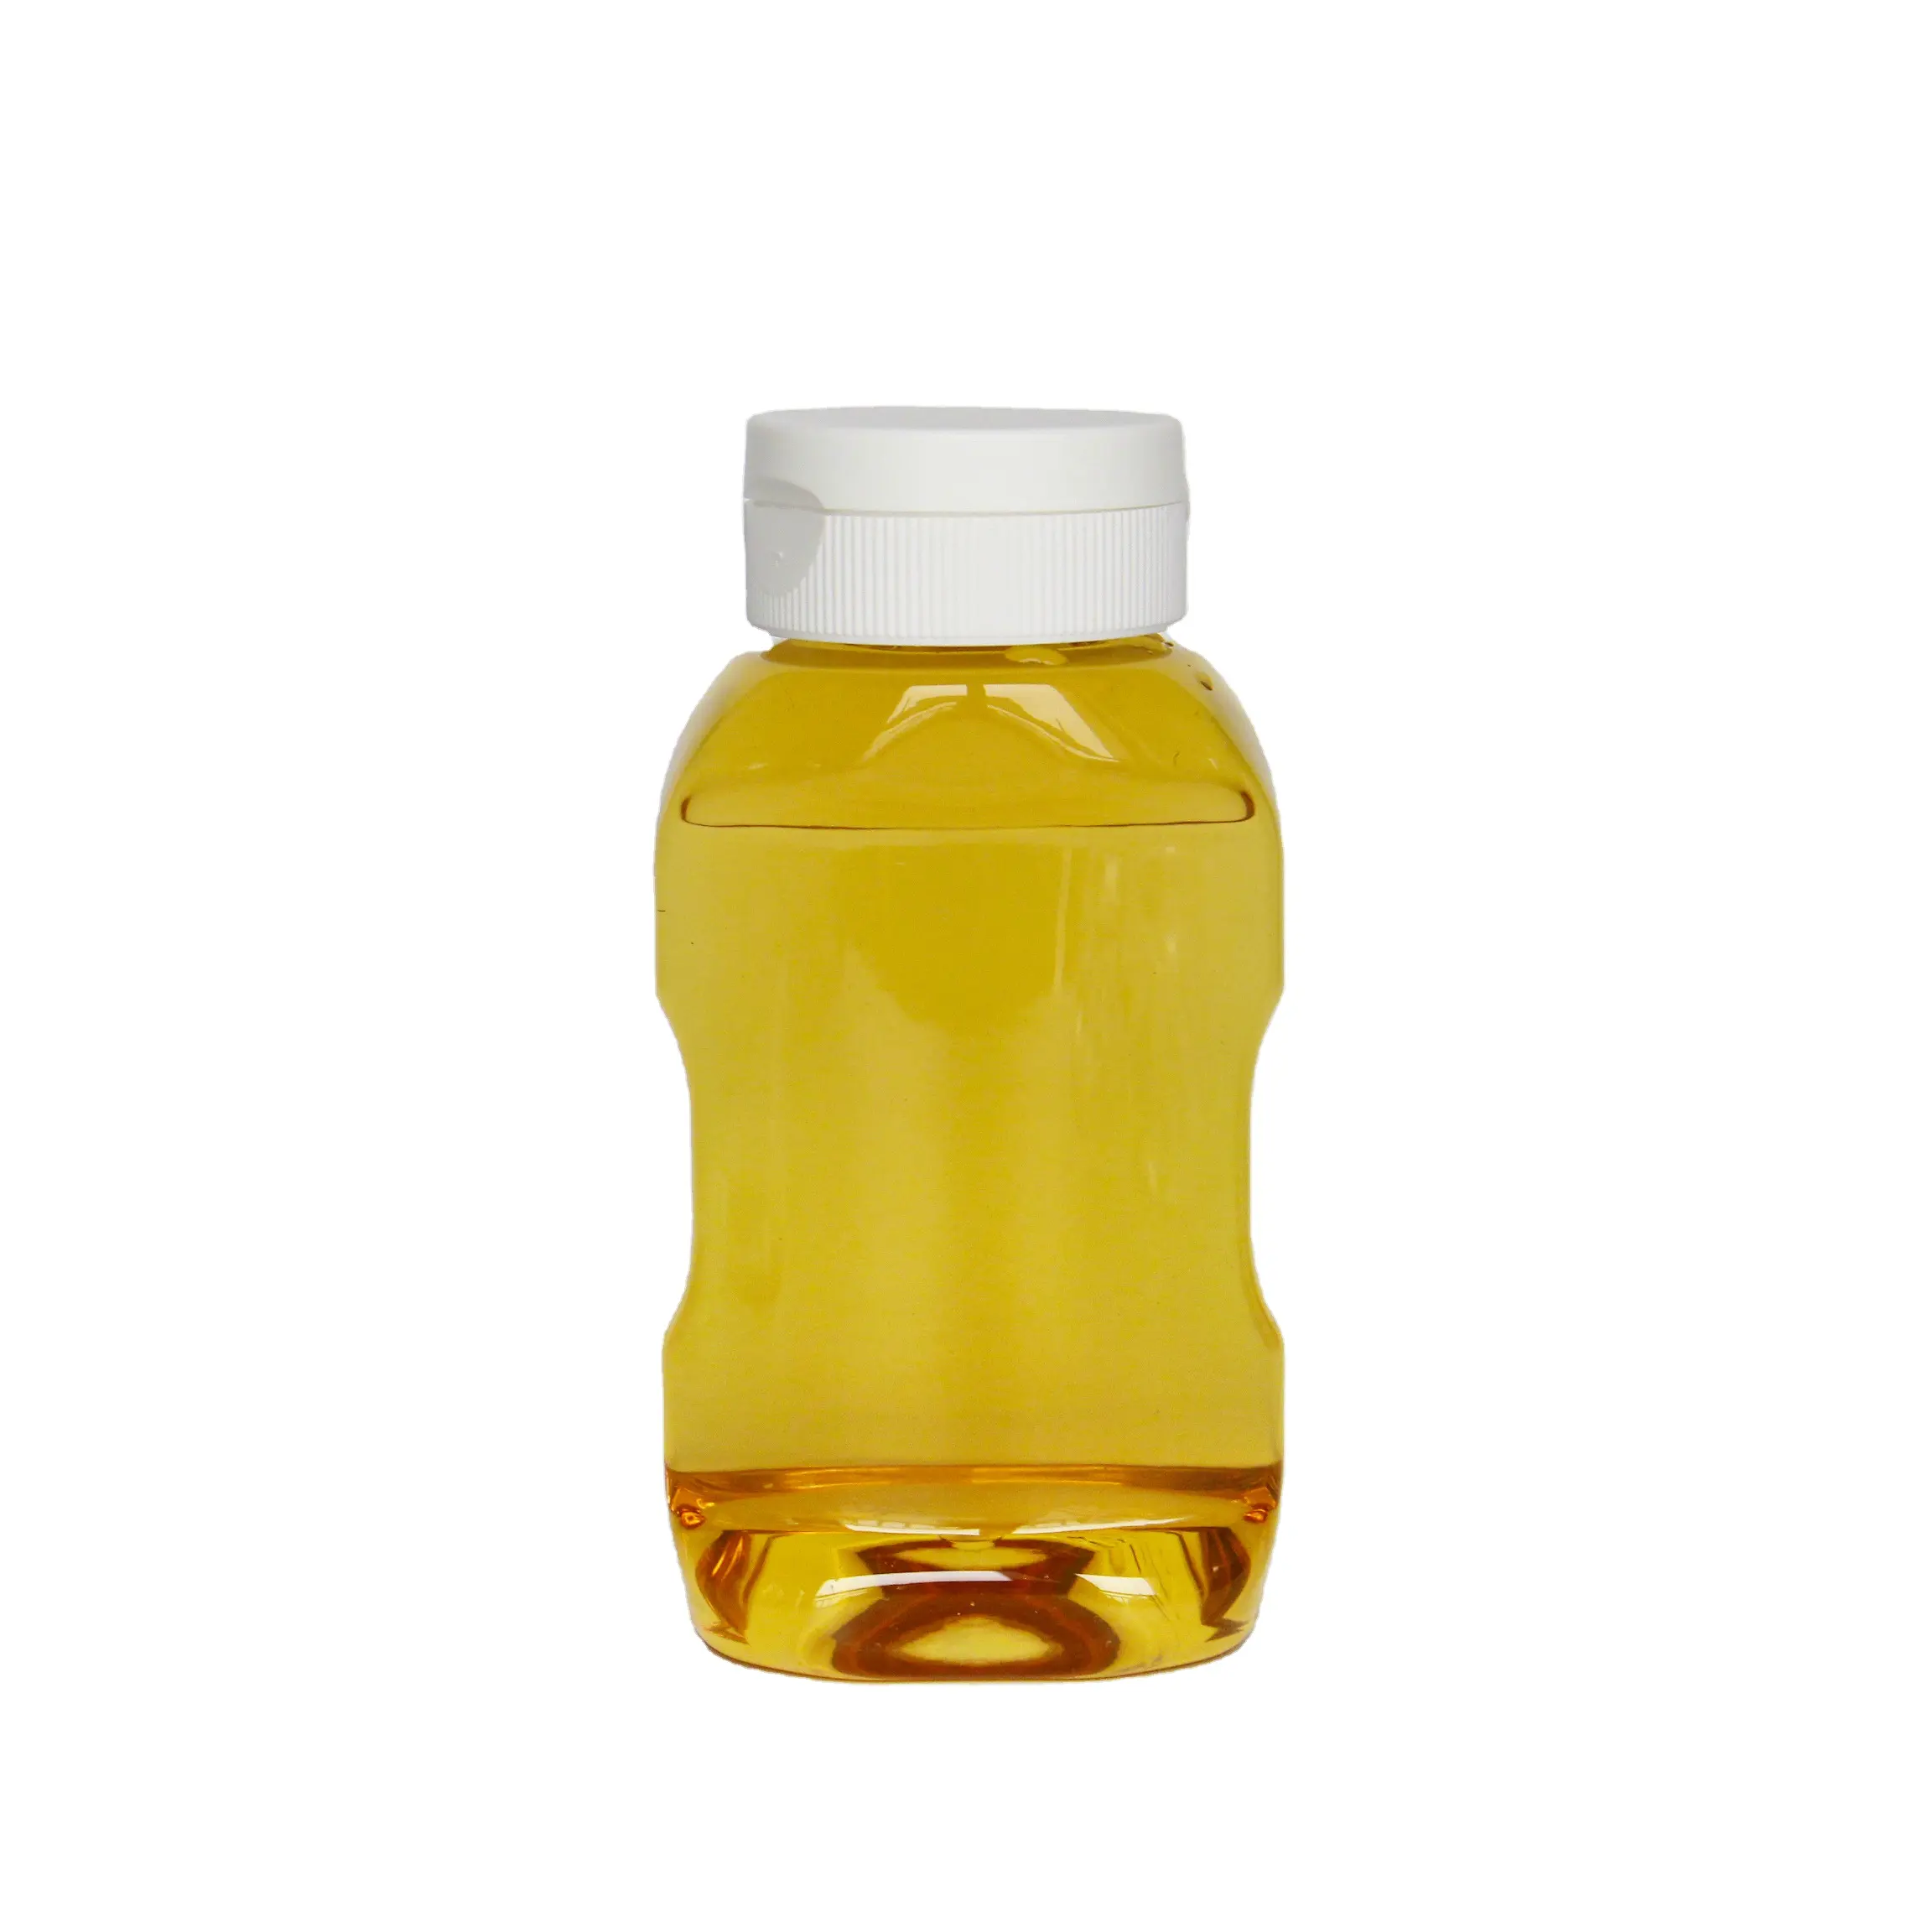 البلاستيك جرة العسل 360 مللي 0.5 كجم الحيوانات الأليفة البلاستيك العسل صلصة شراب زجاحة ضغط الغذاء الصف